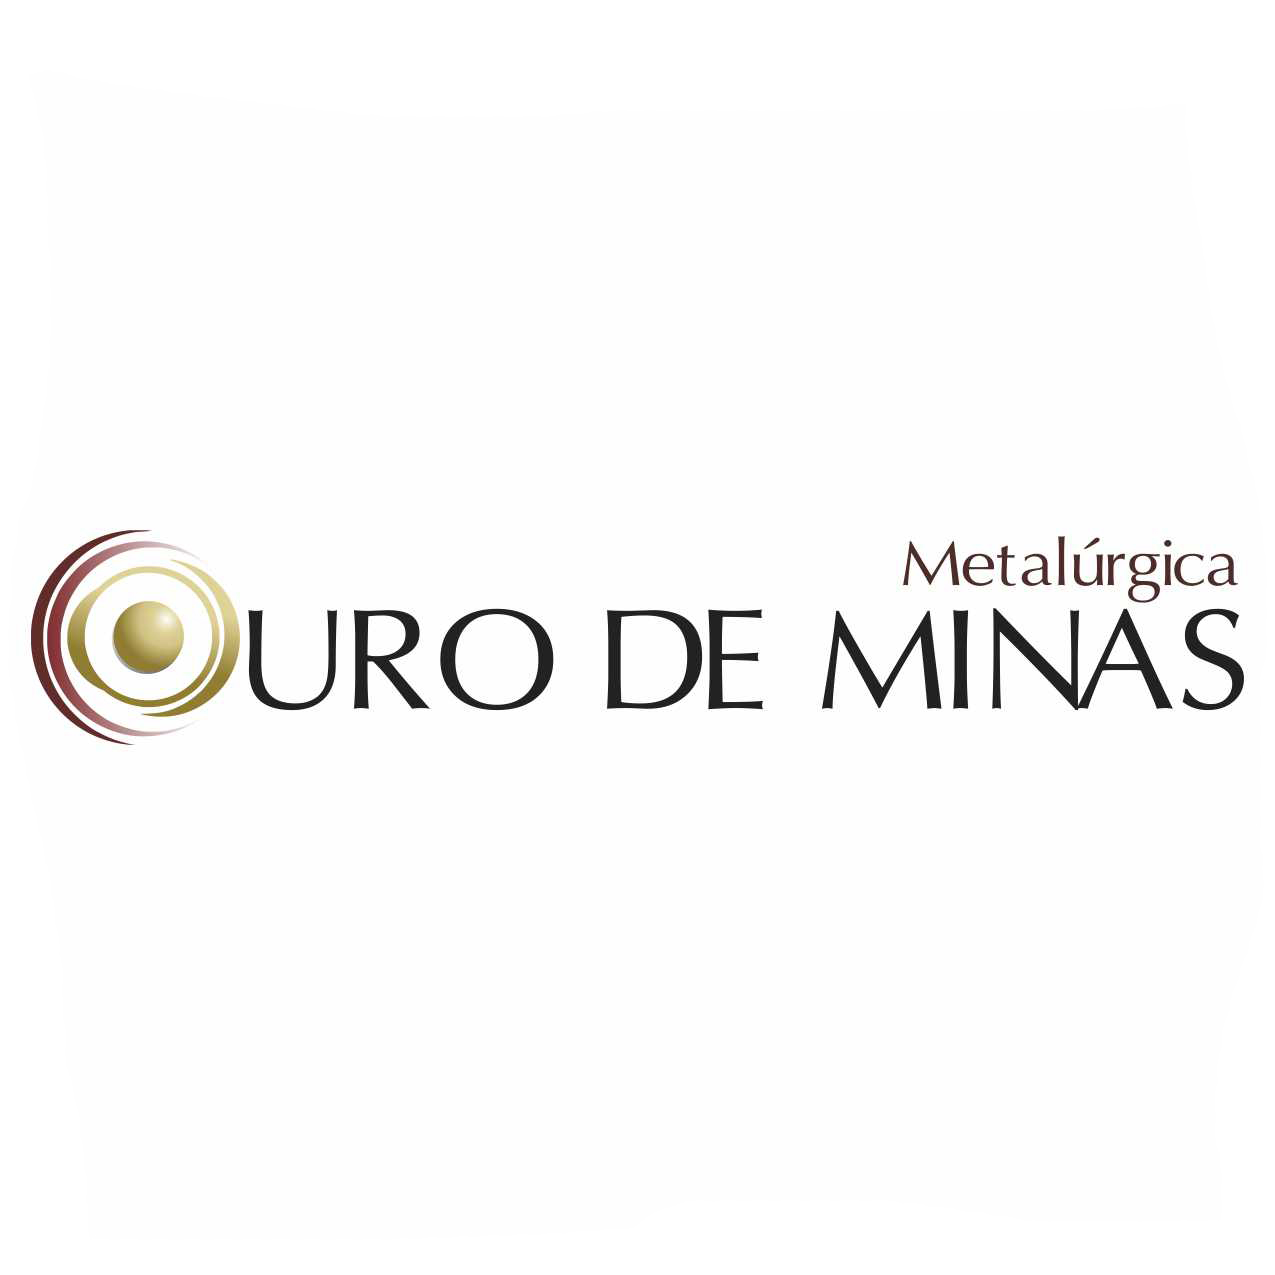 Metalúrgica Ouro de Minas Ltda